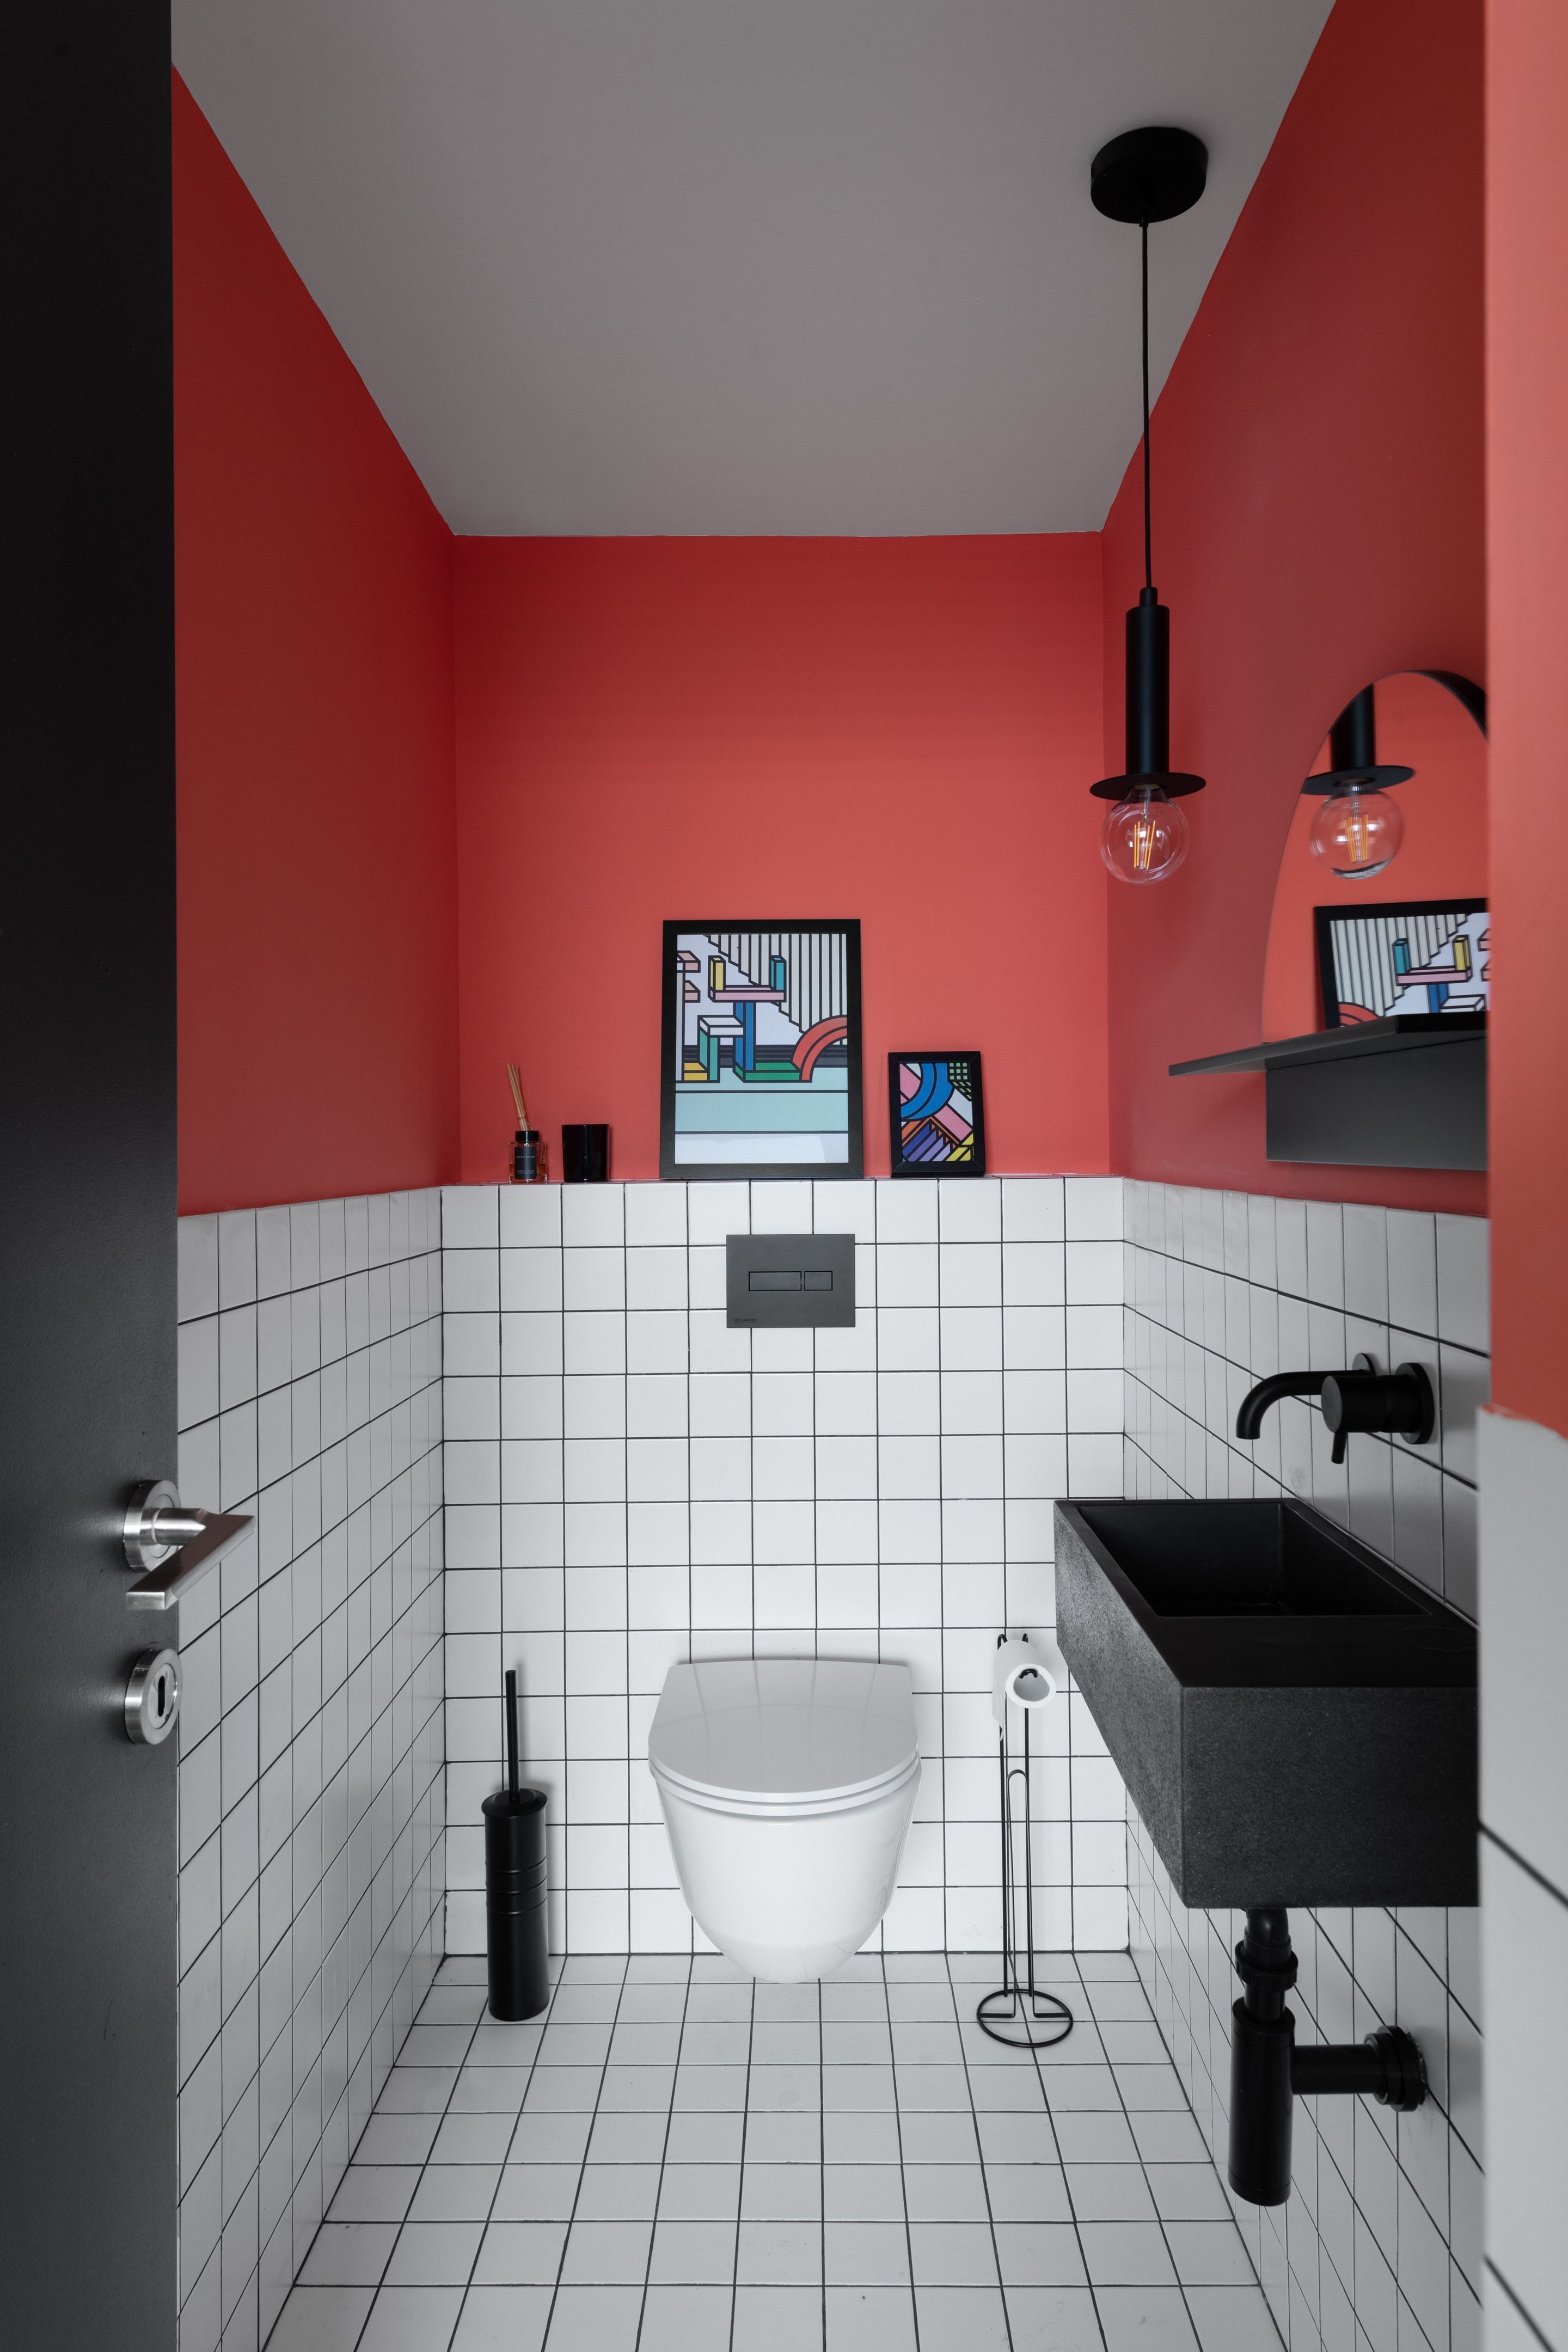 Décor do dia: banheiro tricolor com meia parede pintada (Foto: Divulgação)